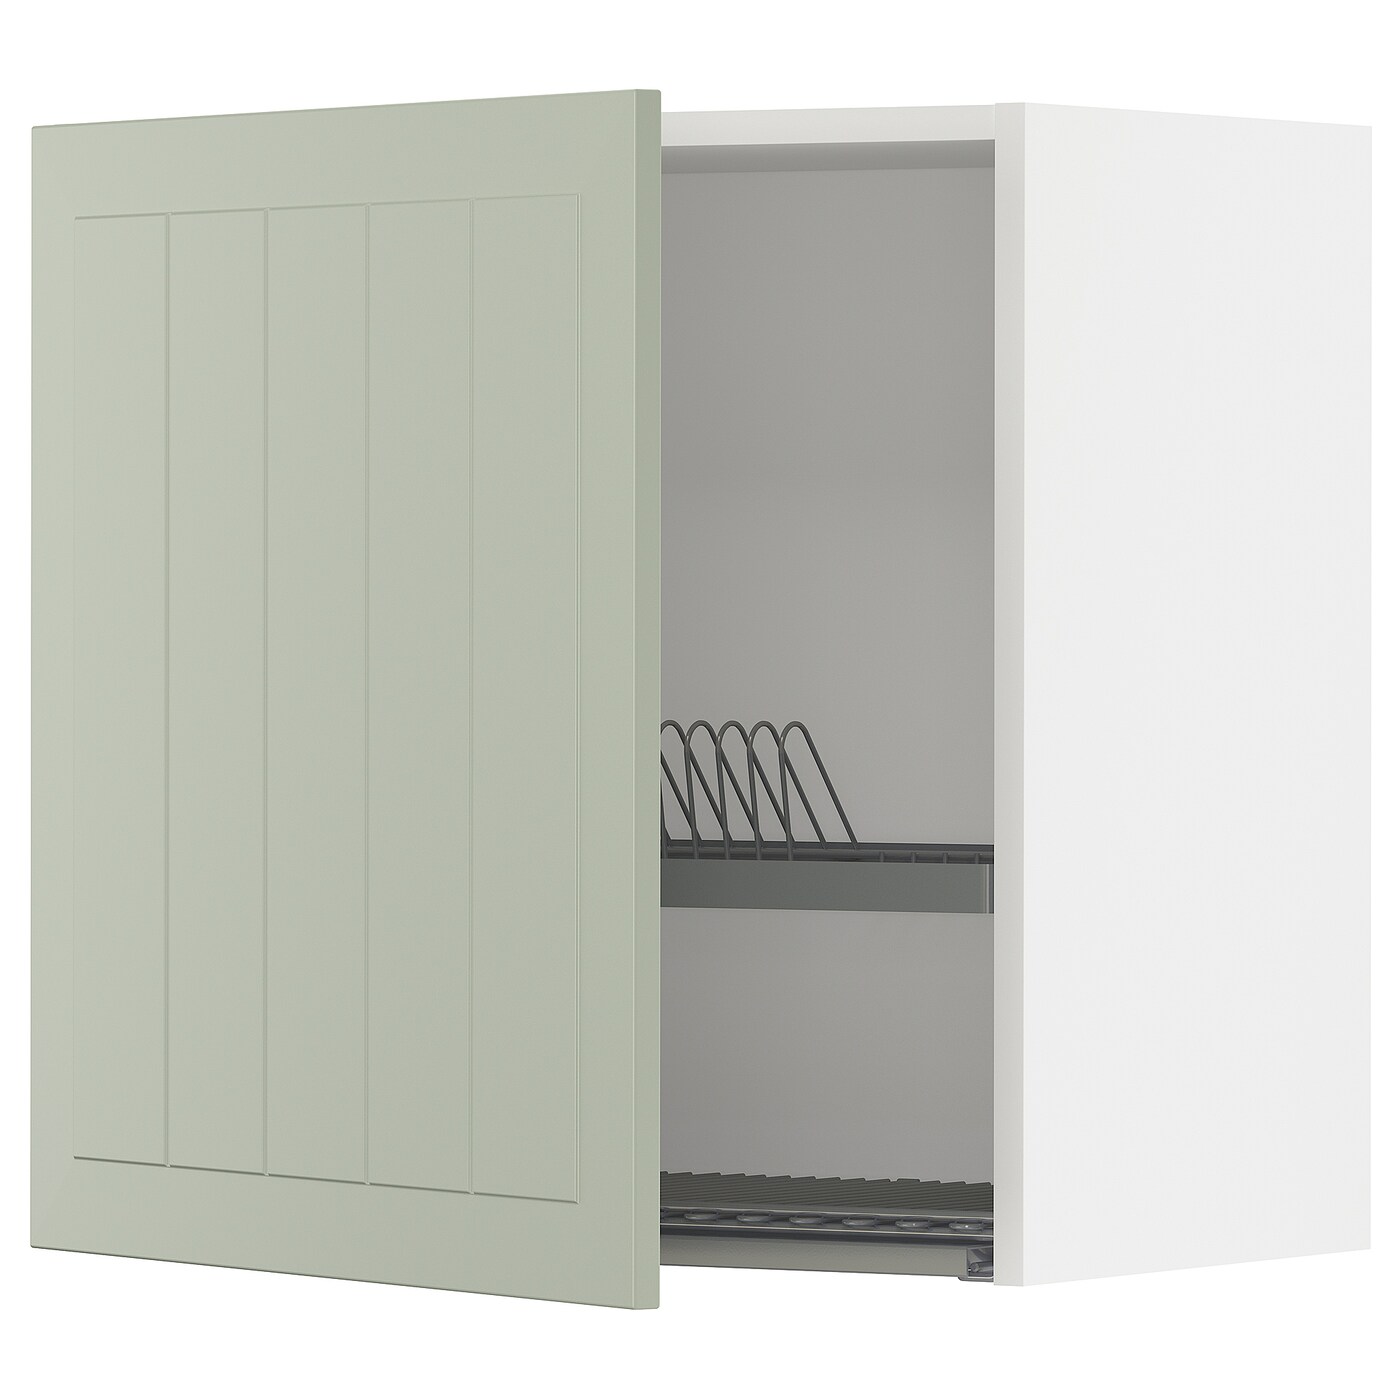 Навесной шкаф с сушилкой - METOD IKEA/ МЕТОД ИКЕА, 60х60 см, белый/зеленый